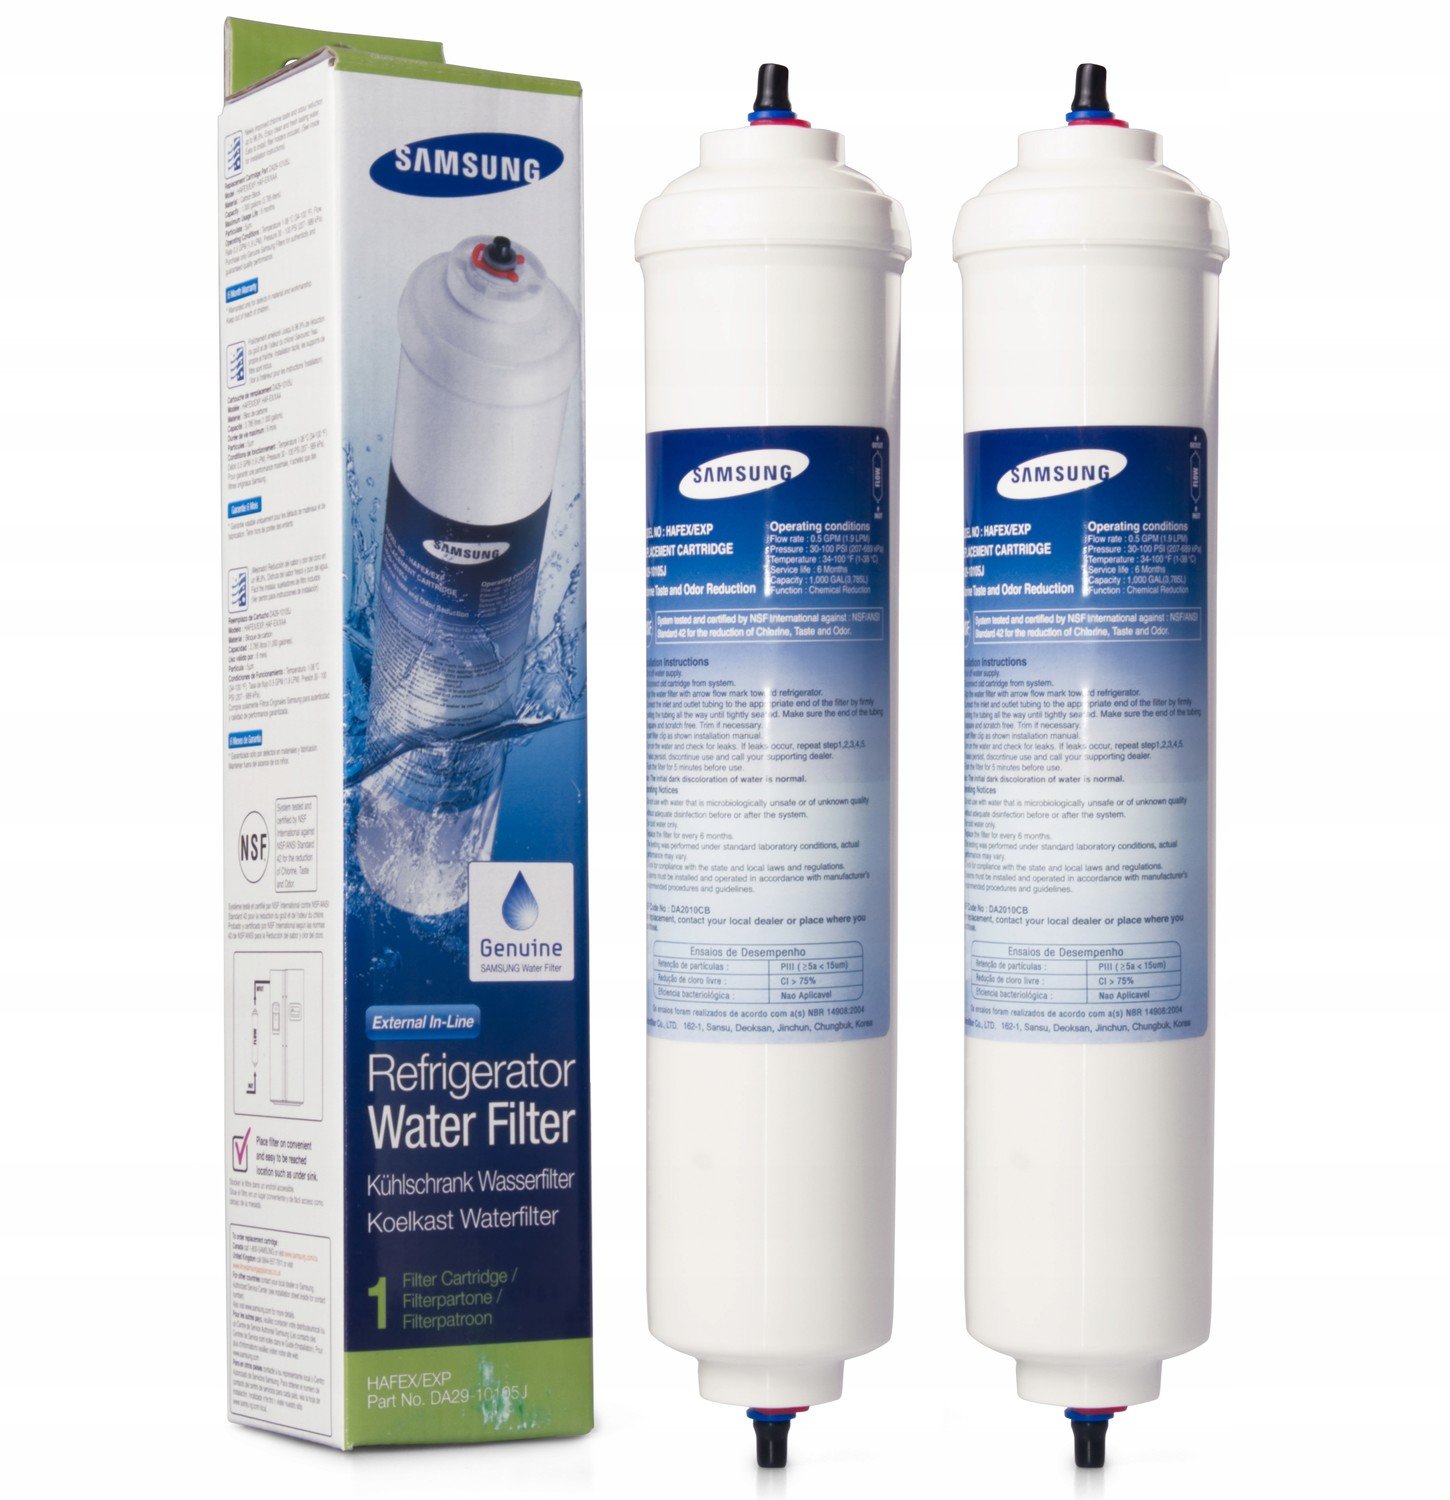 2 ks DA29-10105J vodní filtr do lednice Samsung